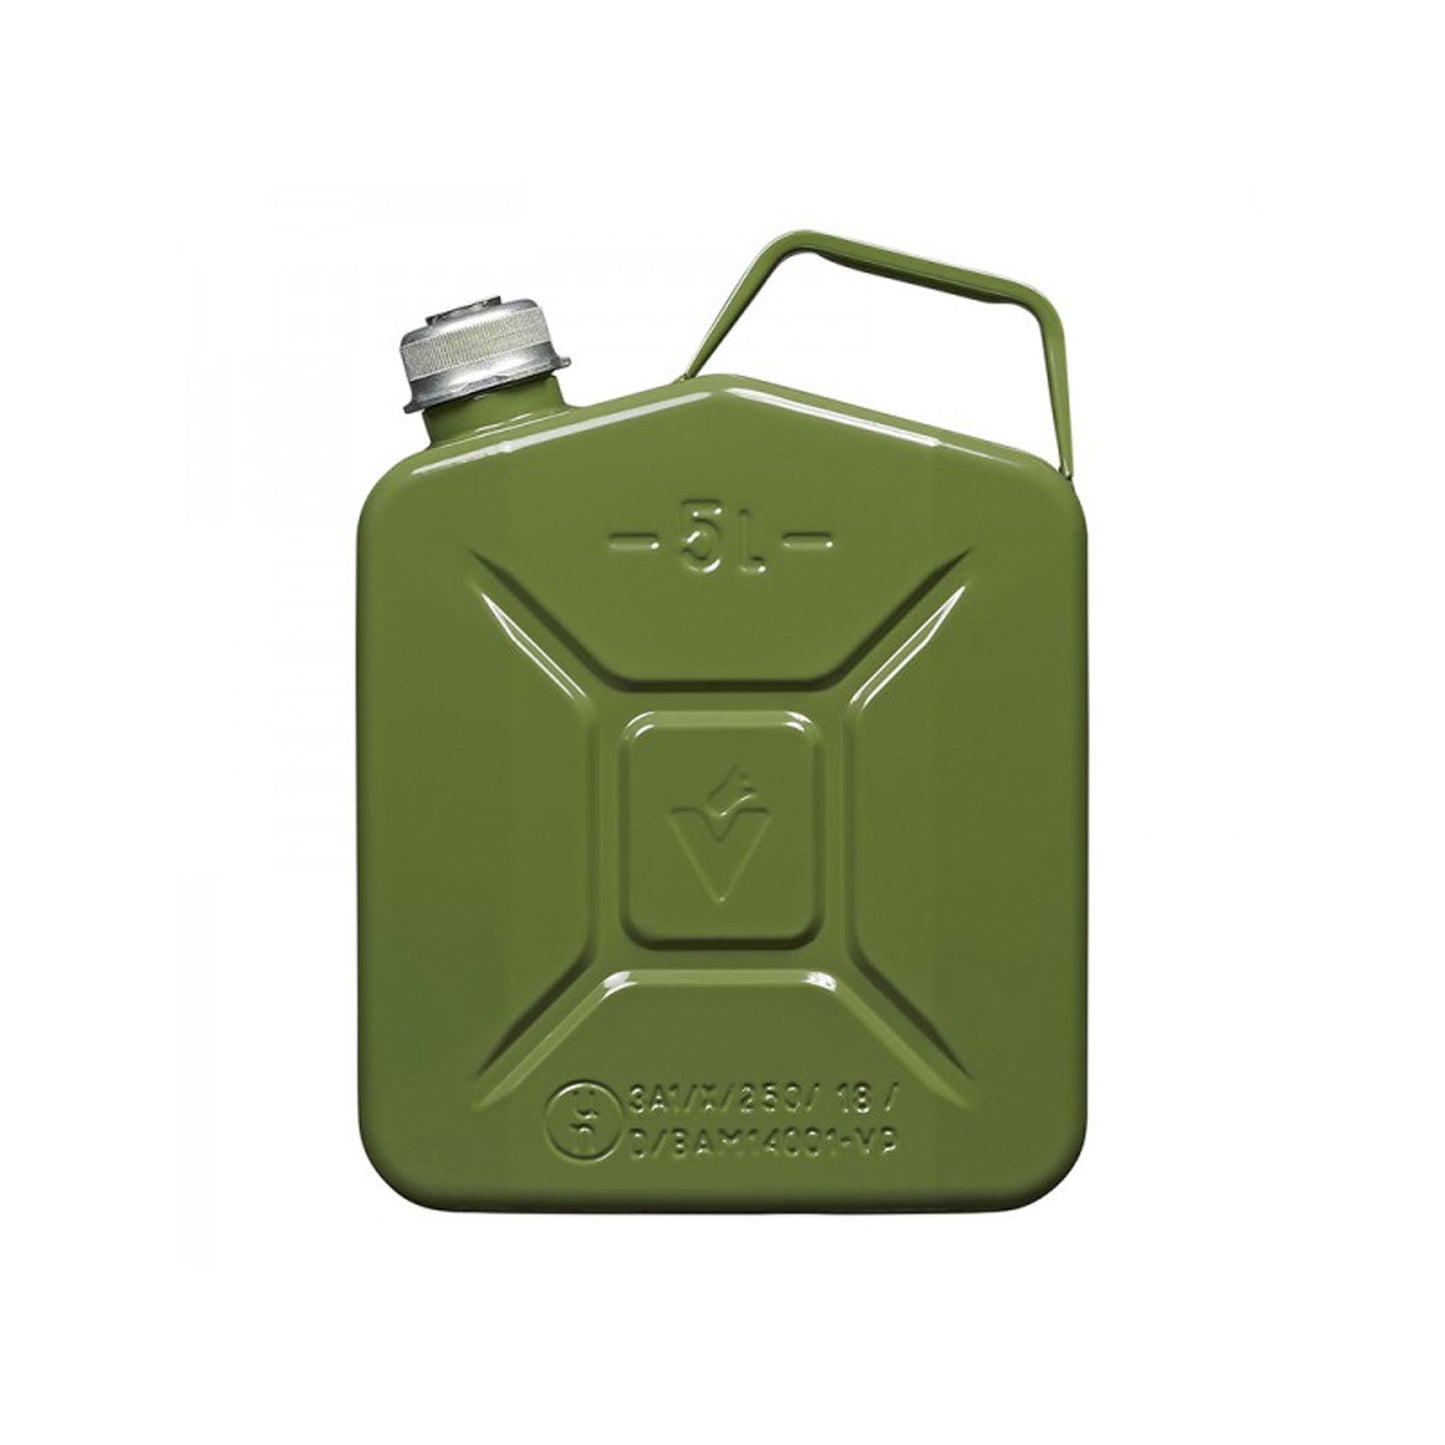 Benzinkanister 5L metall grün mit magnetischem Schraubverschluss UN- & TüV/ GS-geprüft –